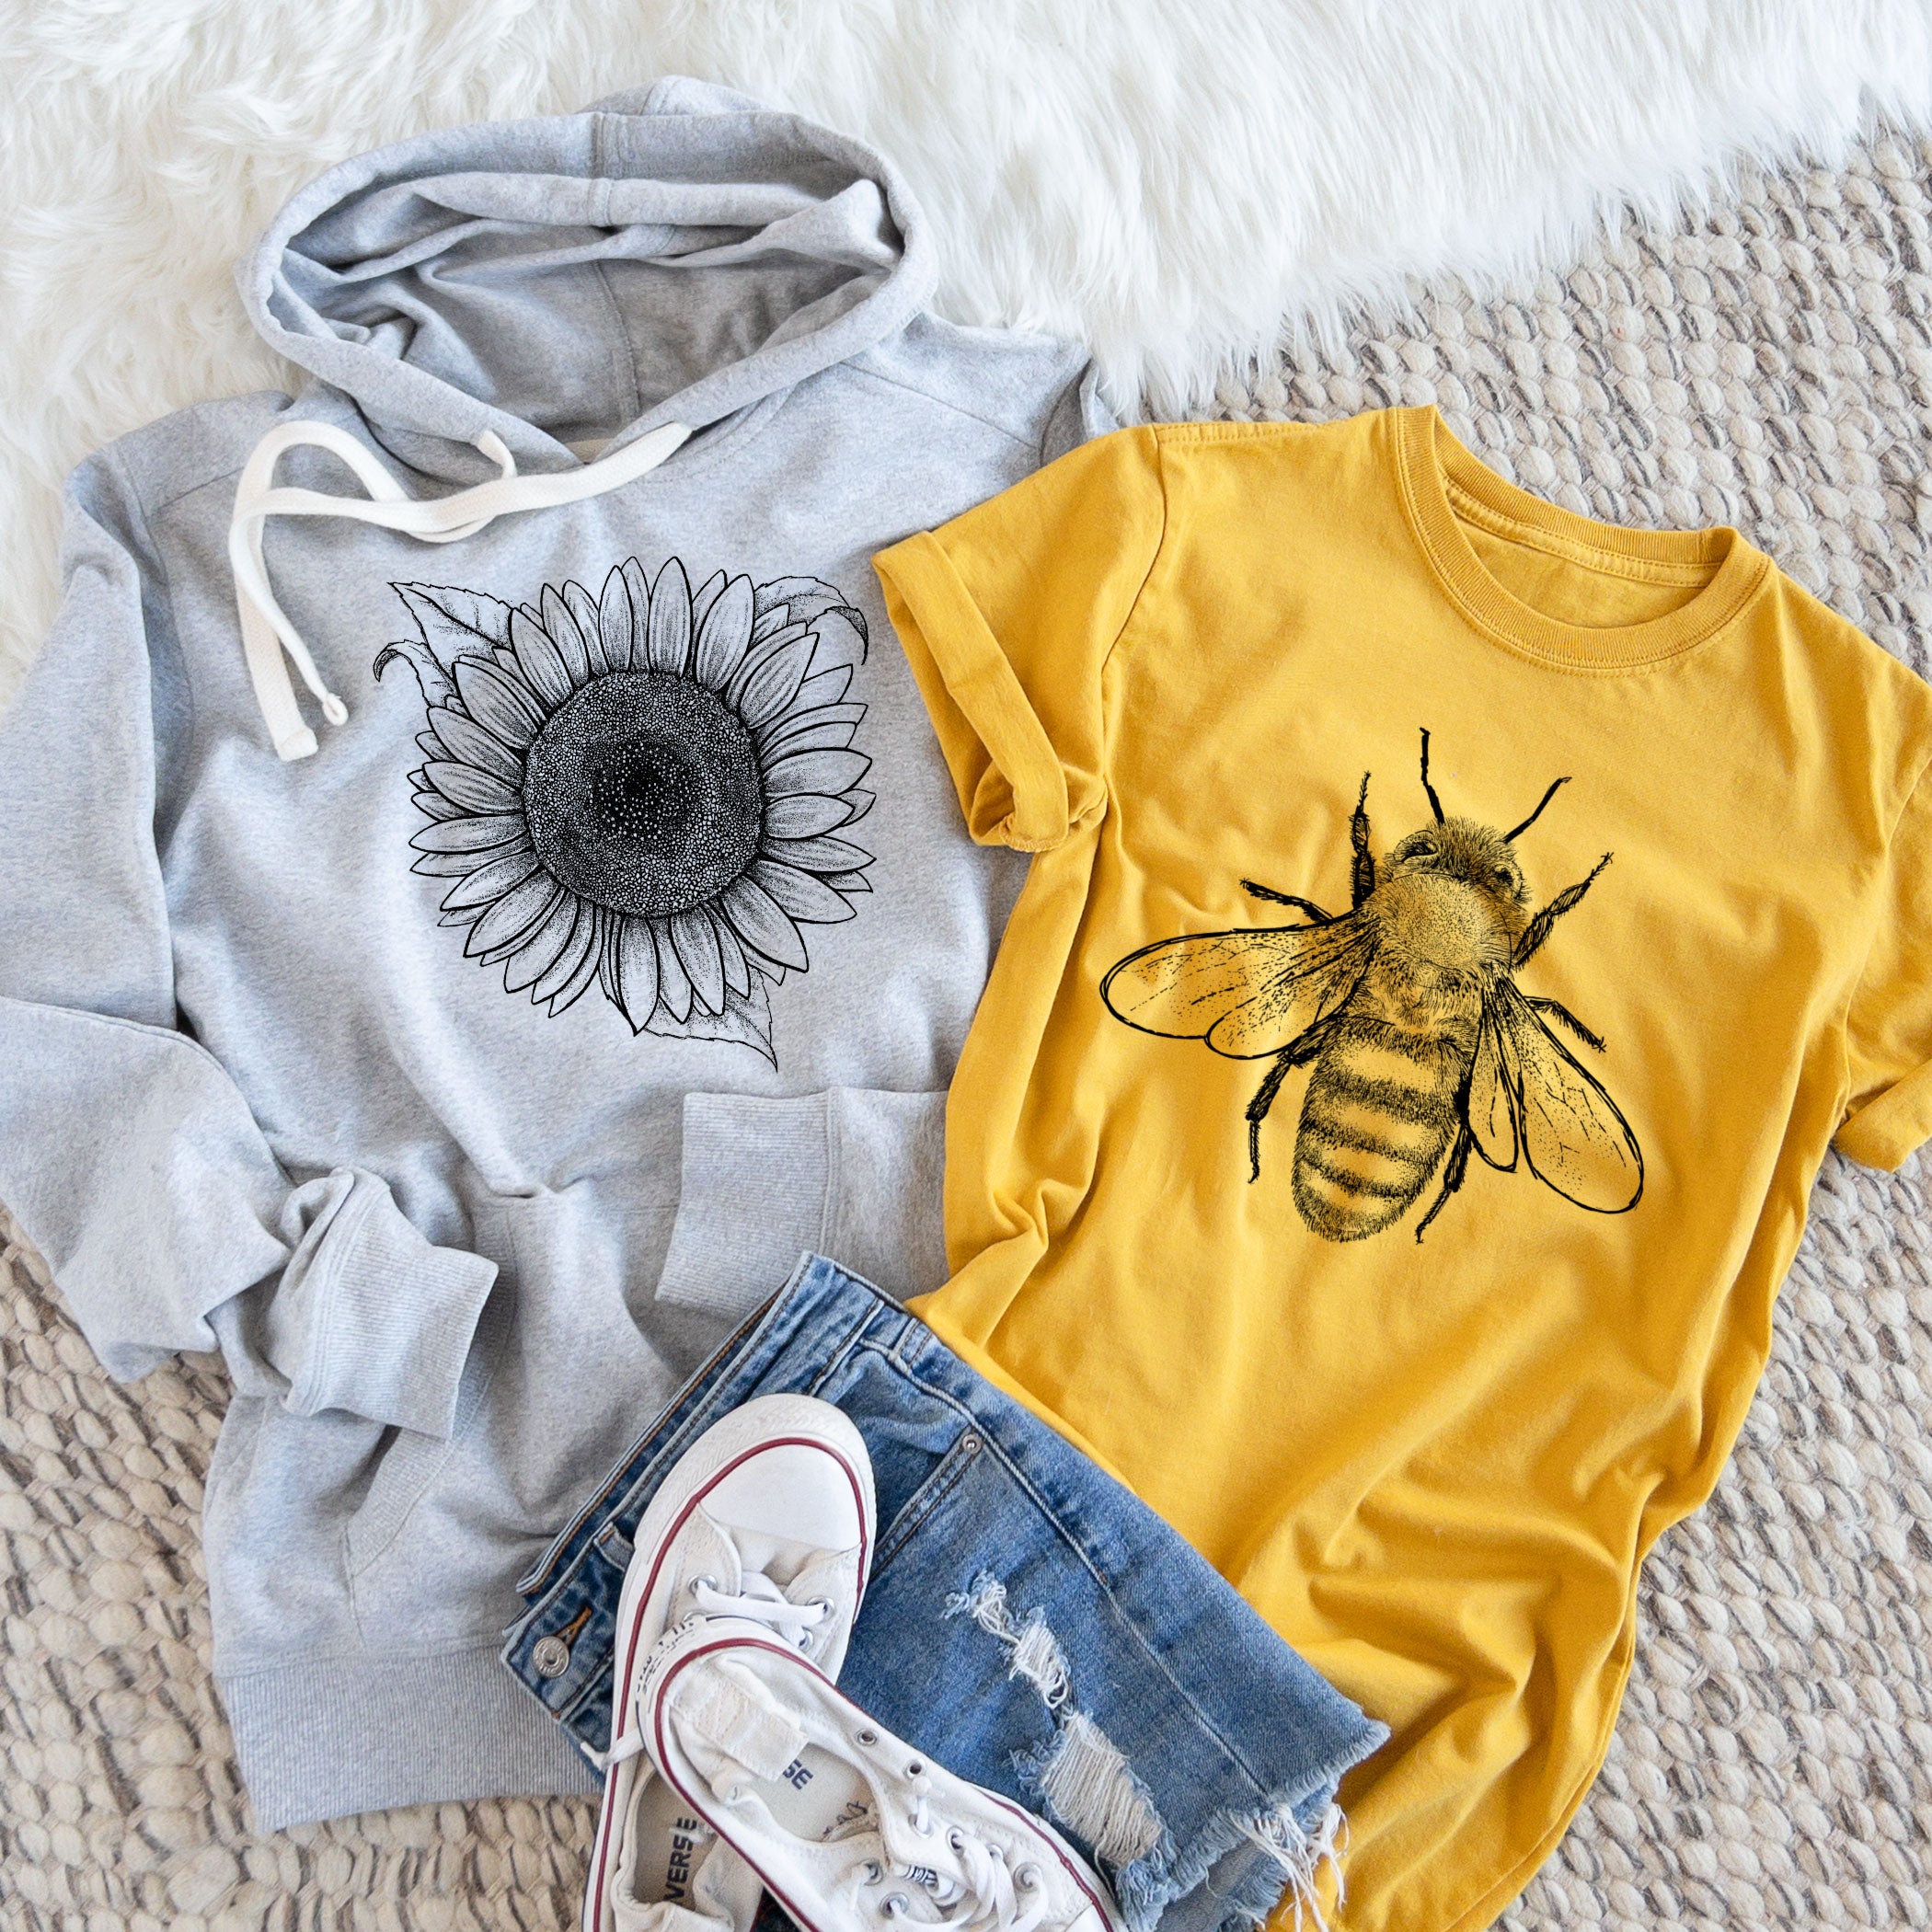 Honeybee shirt and sunflower hoodie